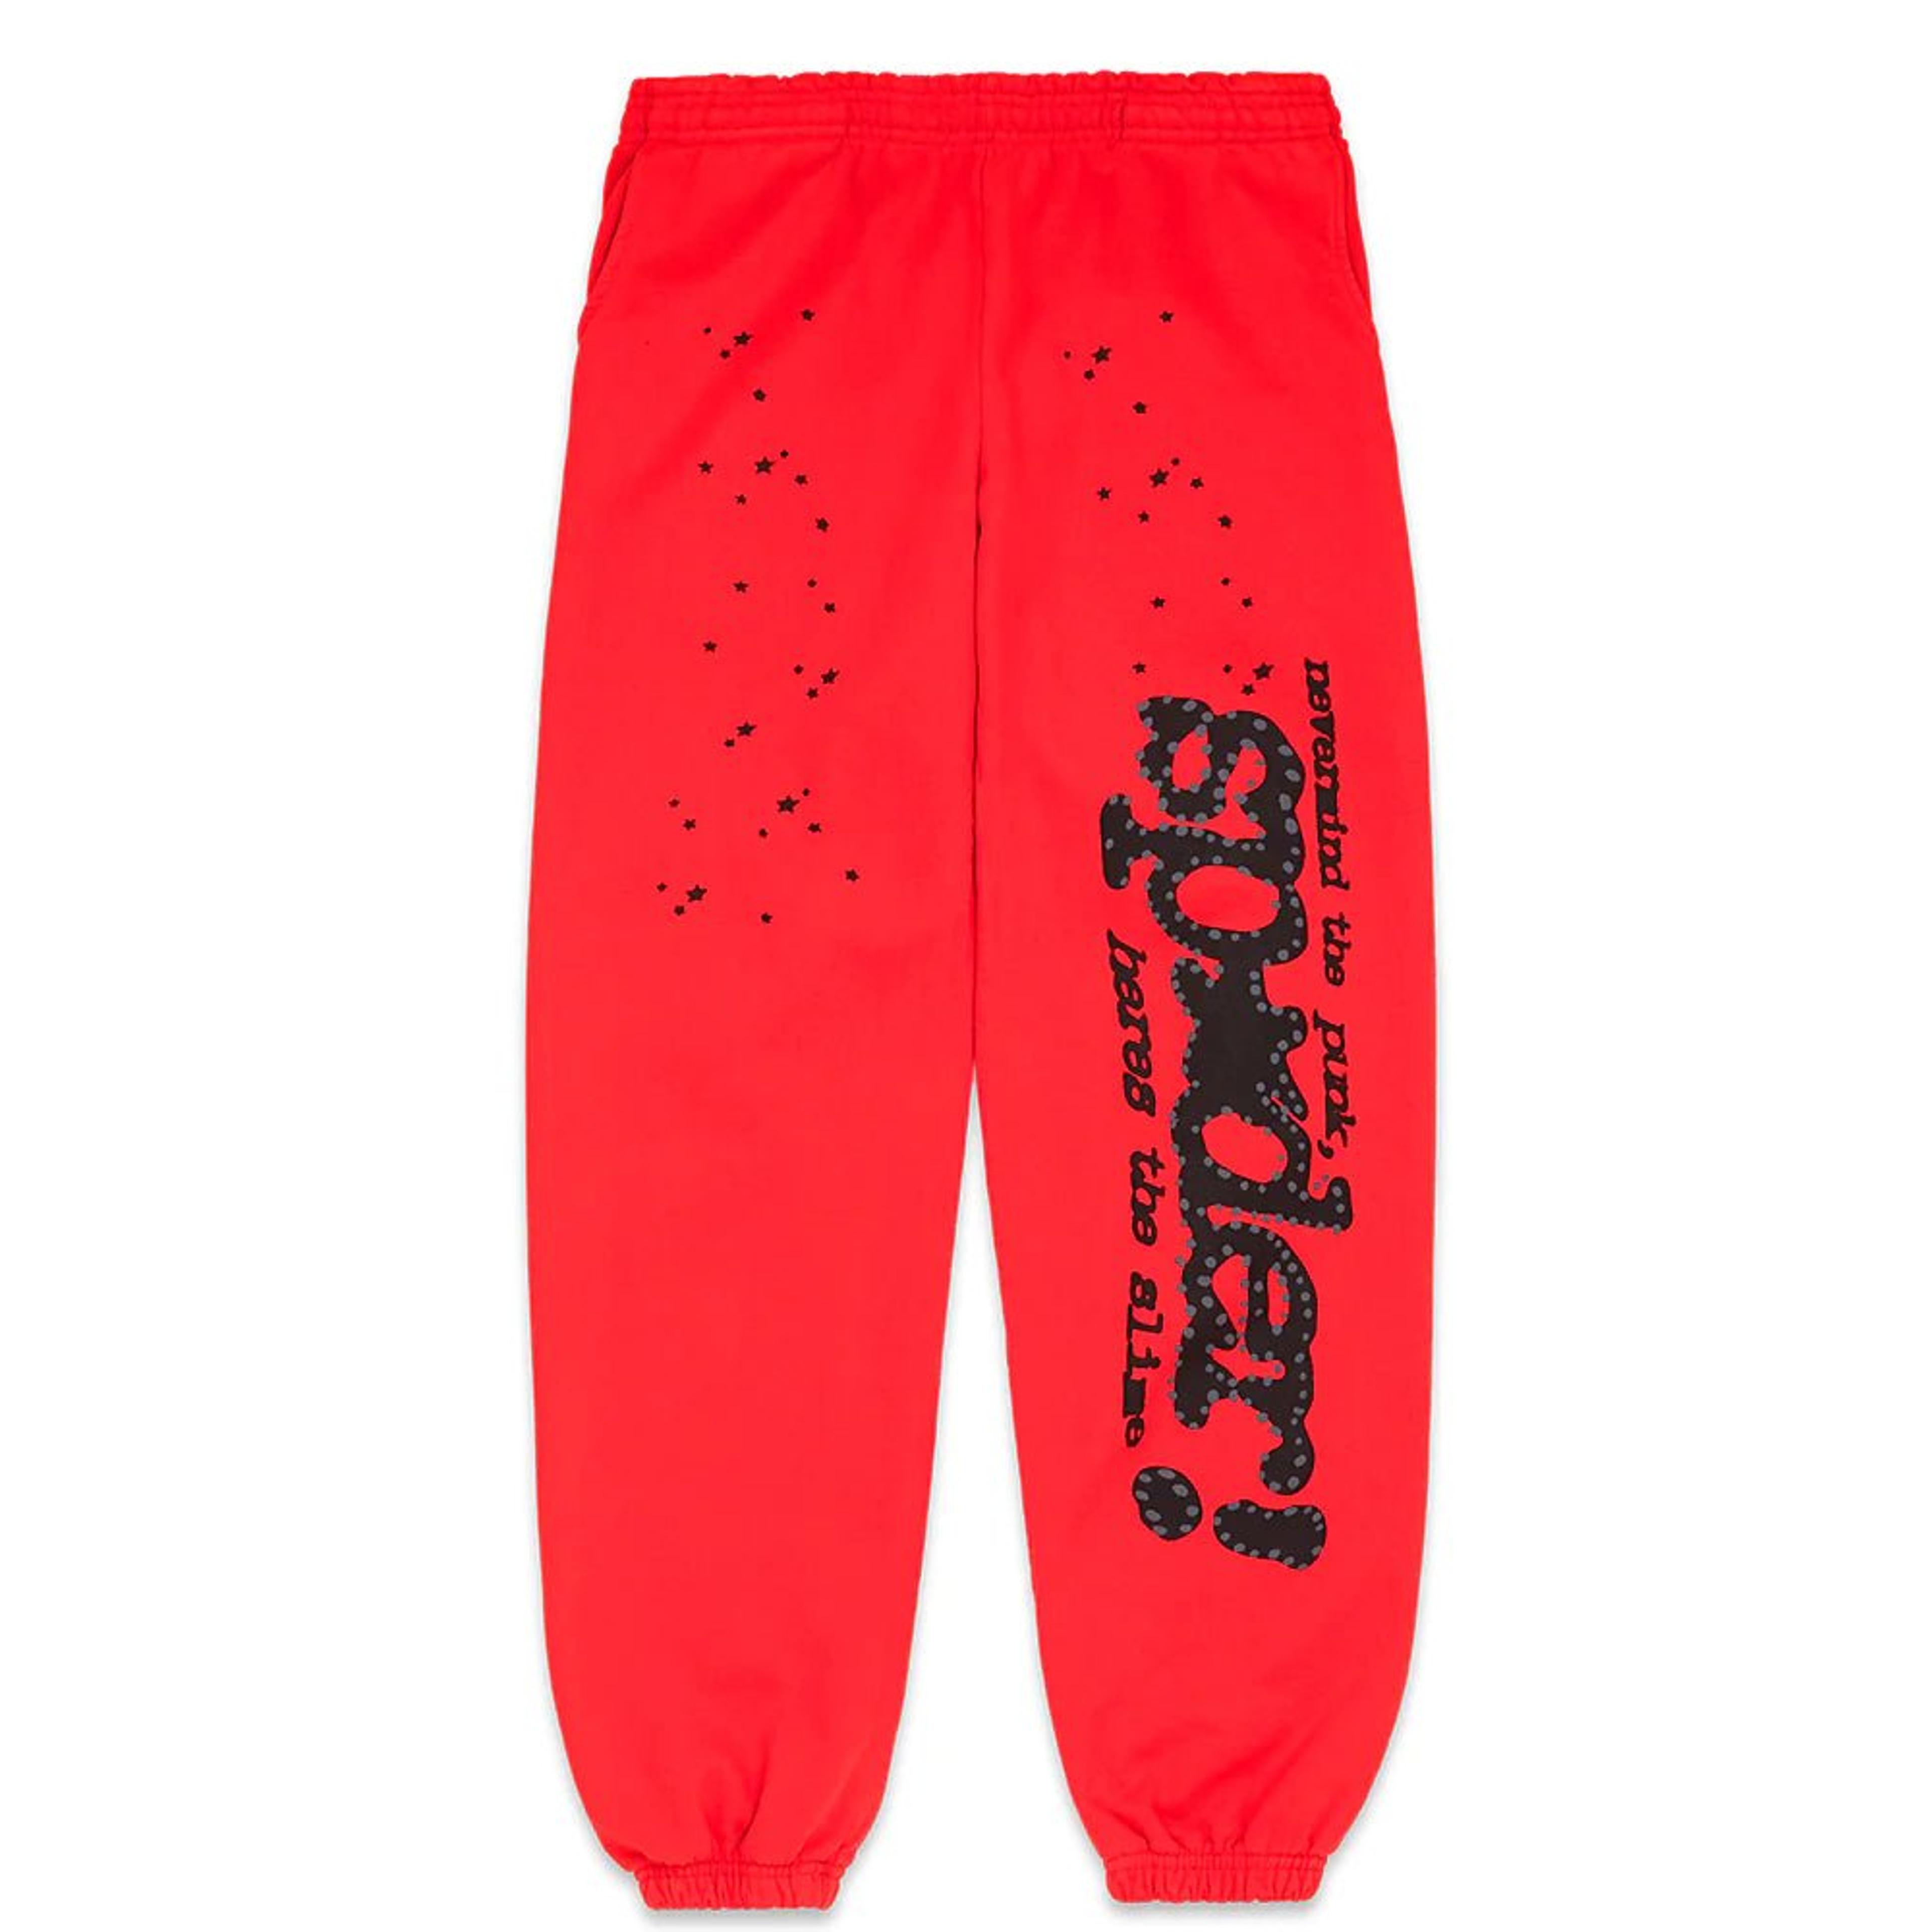 Sp5der Red P*nk V2 Sweatpants